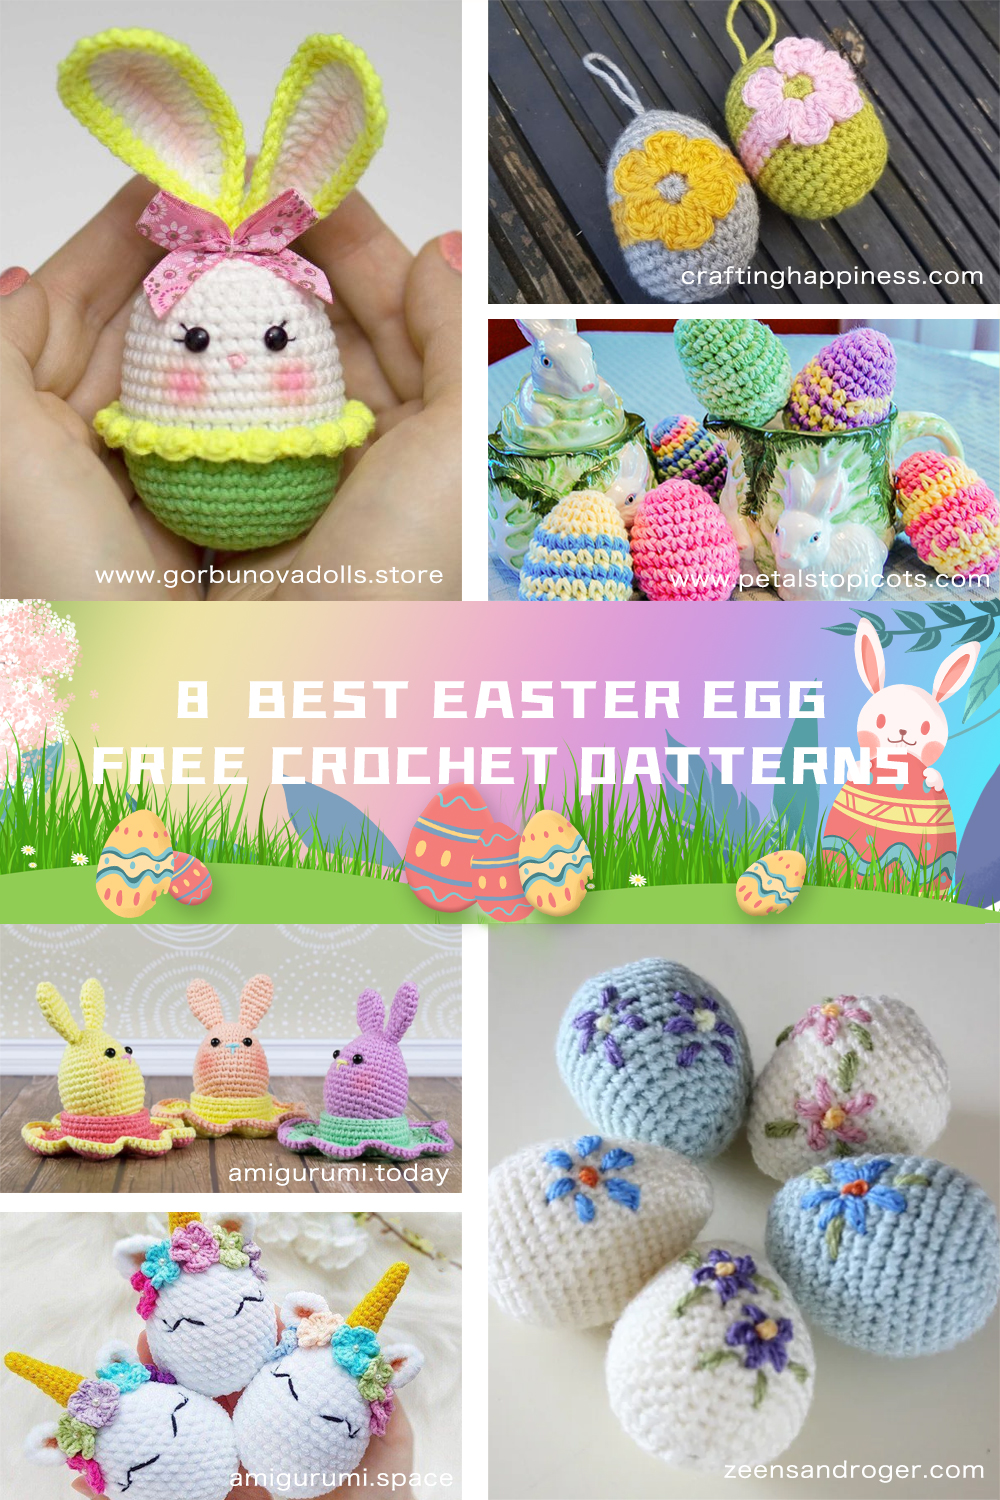  8 Easter Egg Free Crochet Patterns 